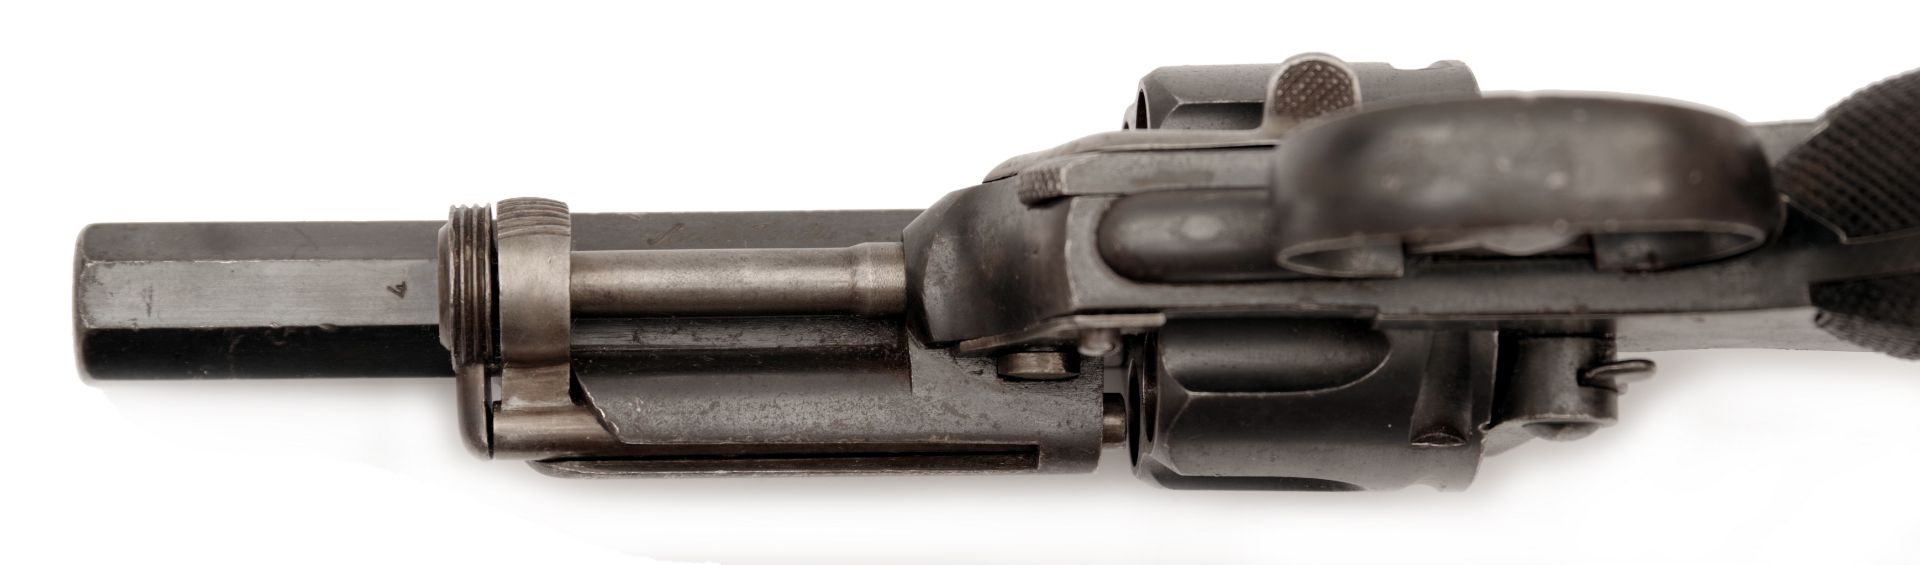 Revolver für Offiziere Fagnus-Maquaire - Bild 4 aus 5